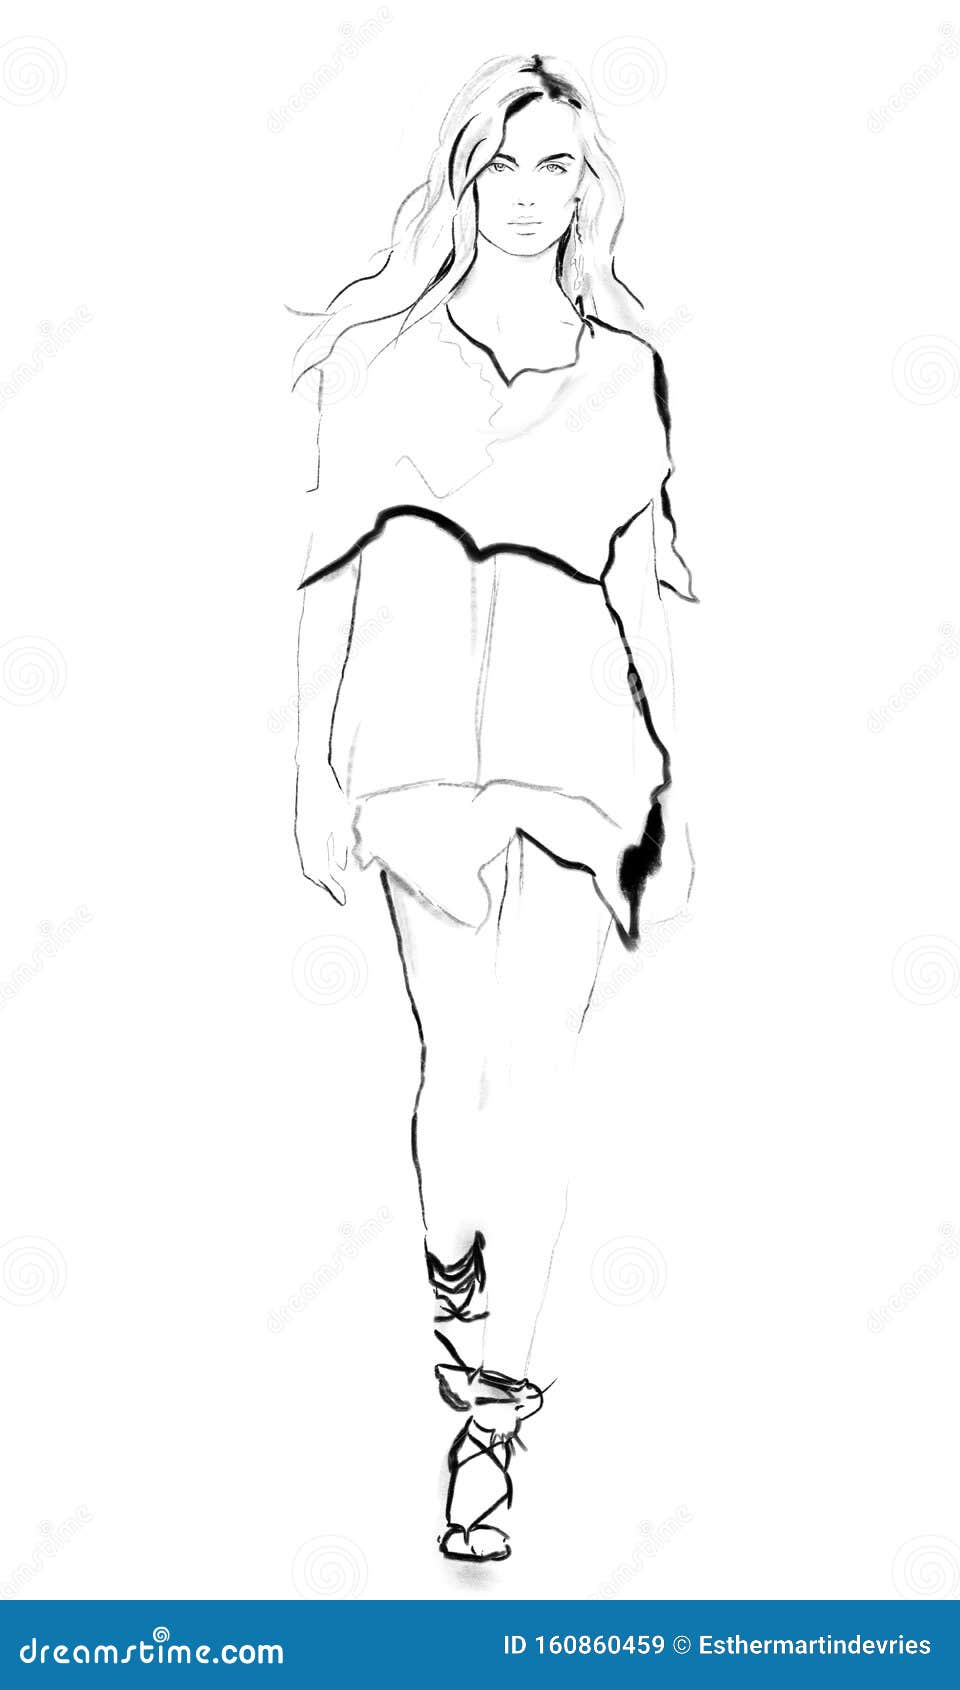 Lápiz De Ilustración En Blanco Y Negro Para Caminar Con El Cuerpo Entero  Stock de ilustración - Ilustración de caminar, alineada: 160860459